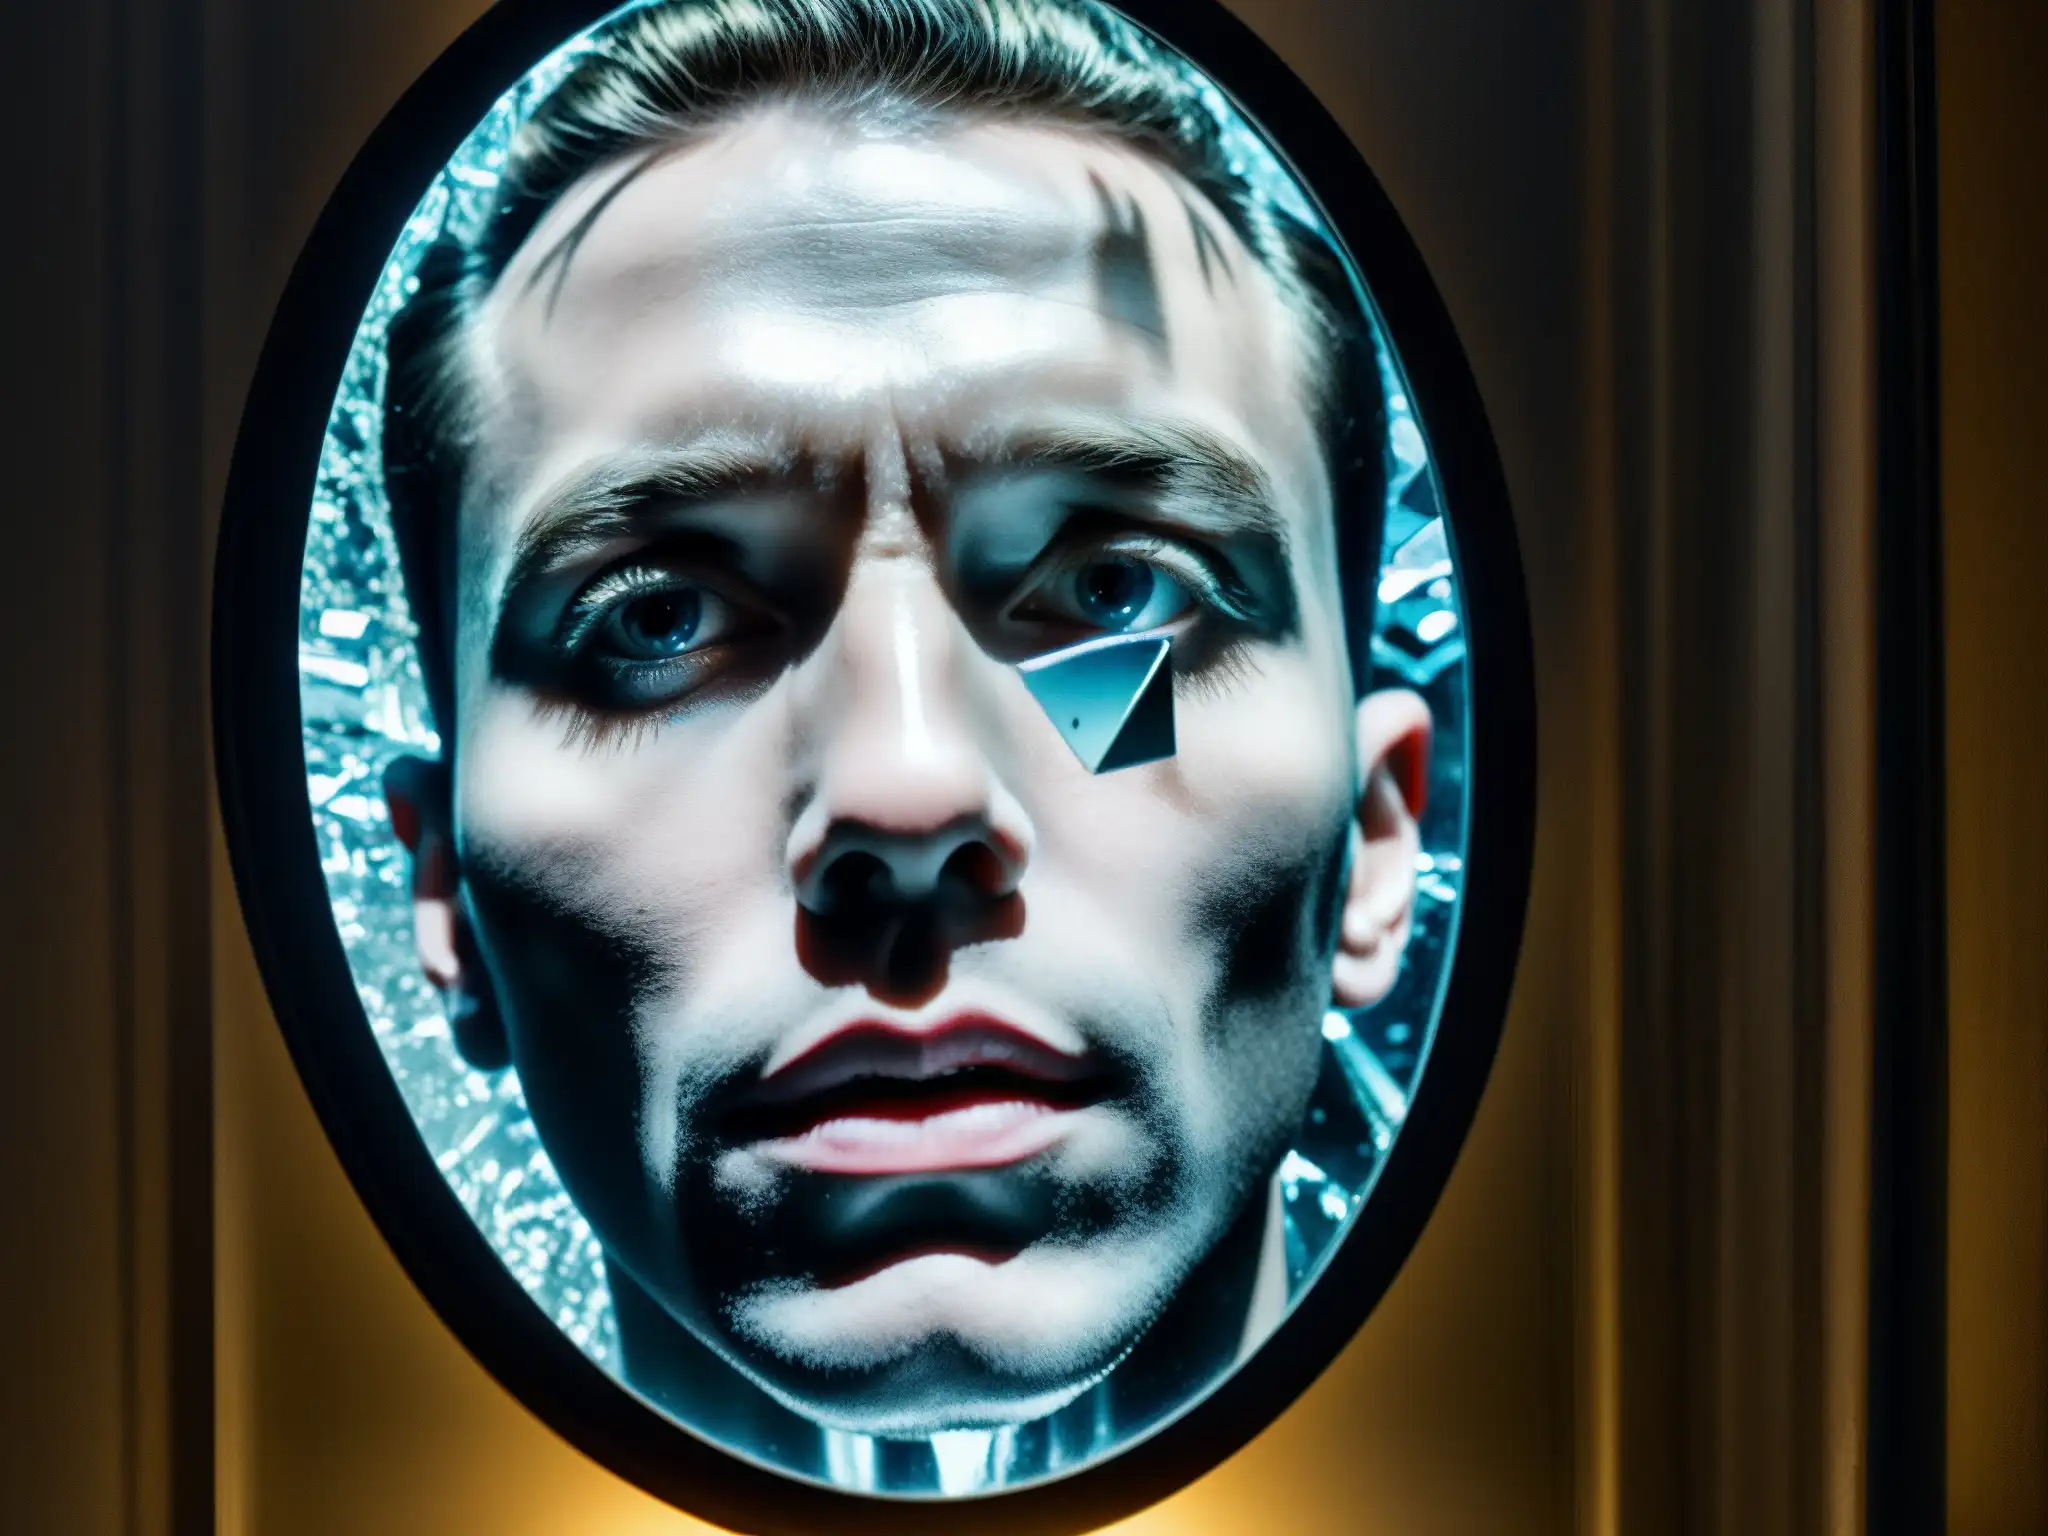 Reflejos fragmentados de una figura inquietante en un espejo roto, evocando el estudio sobre sugestión y miedo en Candyman